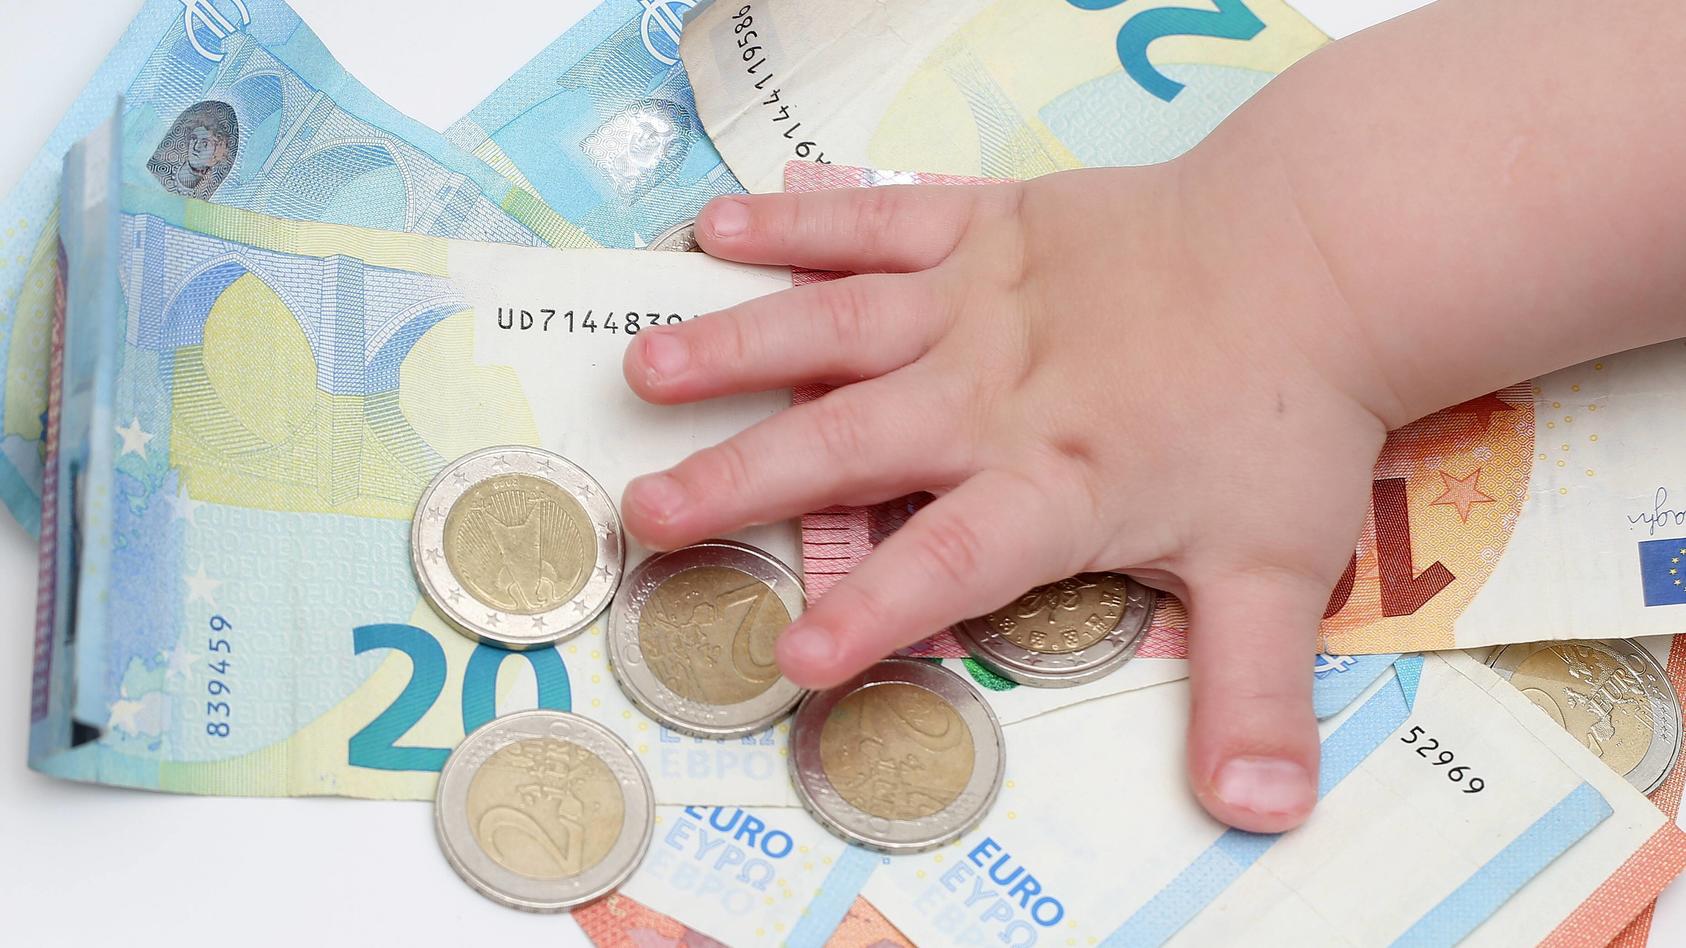 Kinderhand greift nach Stapel von 2 Euro Muenzen auf Geldscheinen